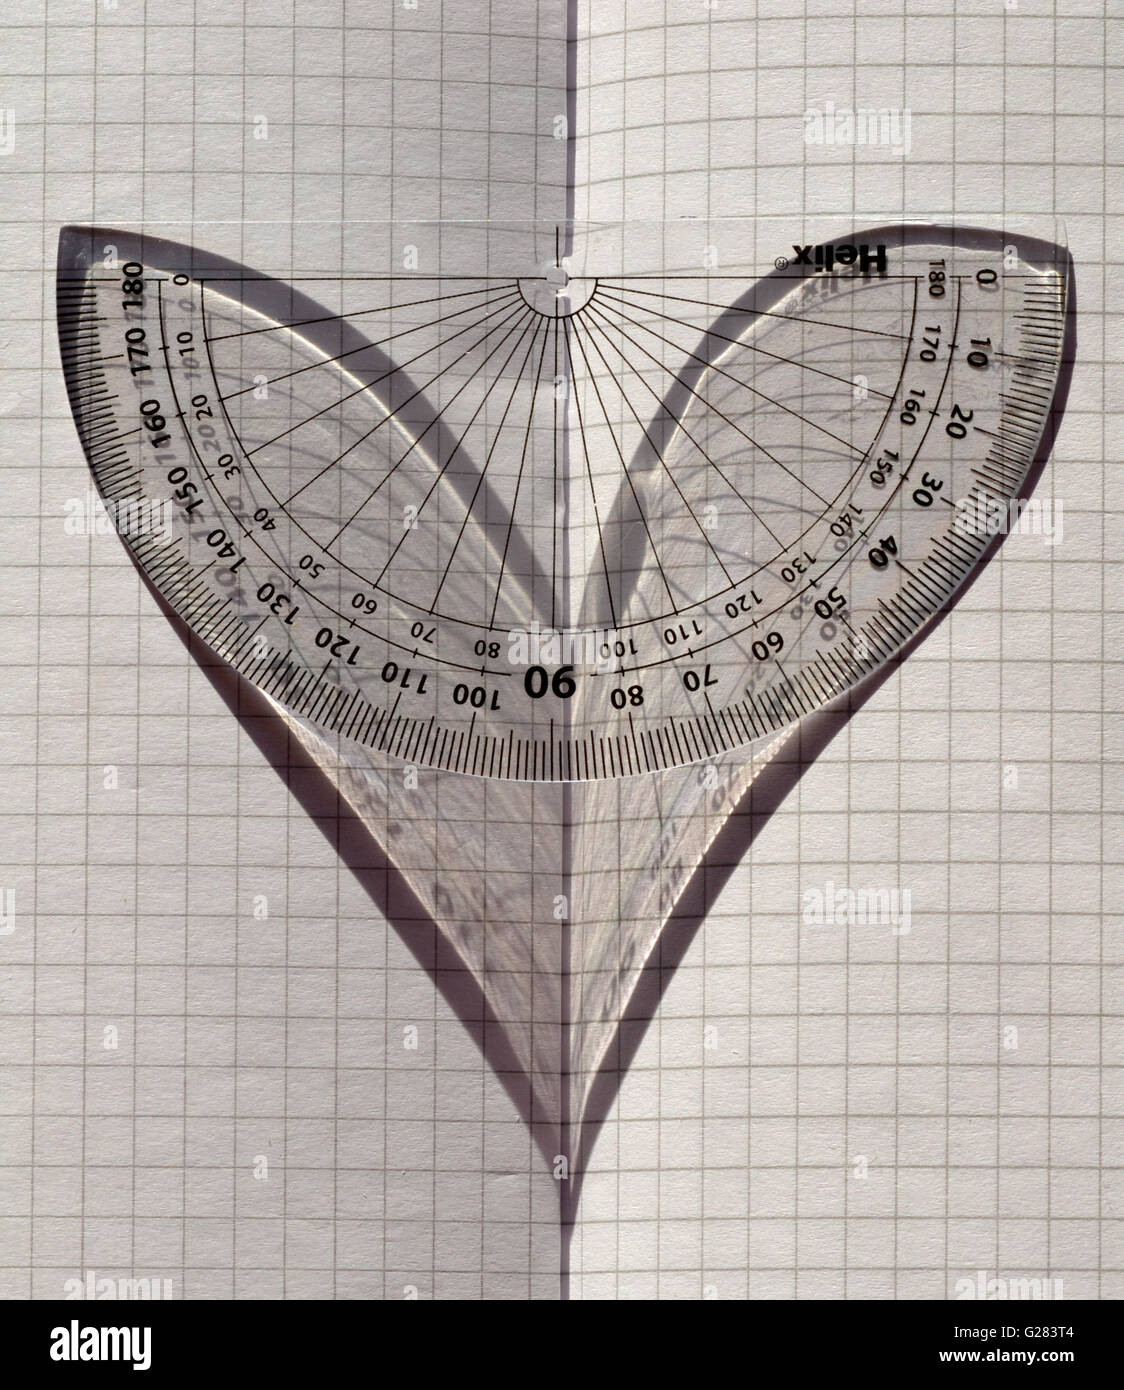 Liebe Mathematik! Ein Winkelmesser im Sonnenlicht auf gefalteten Millimeterpapier, der Schatten ein Herz darstellt. Stockfoto